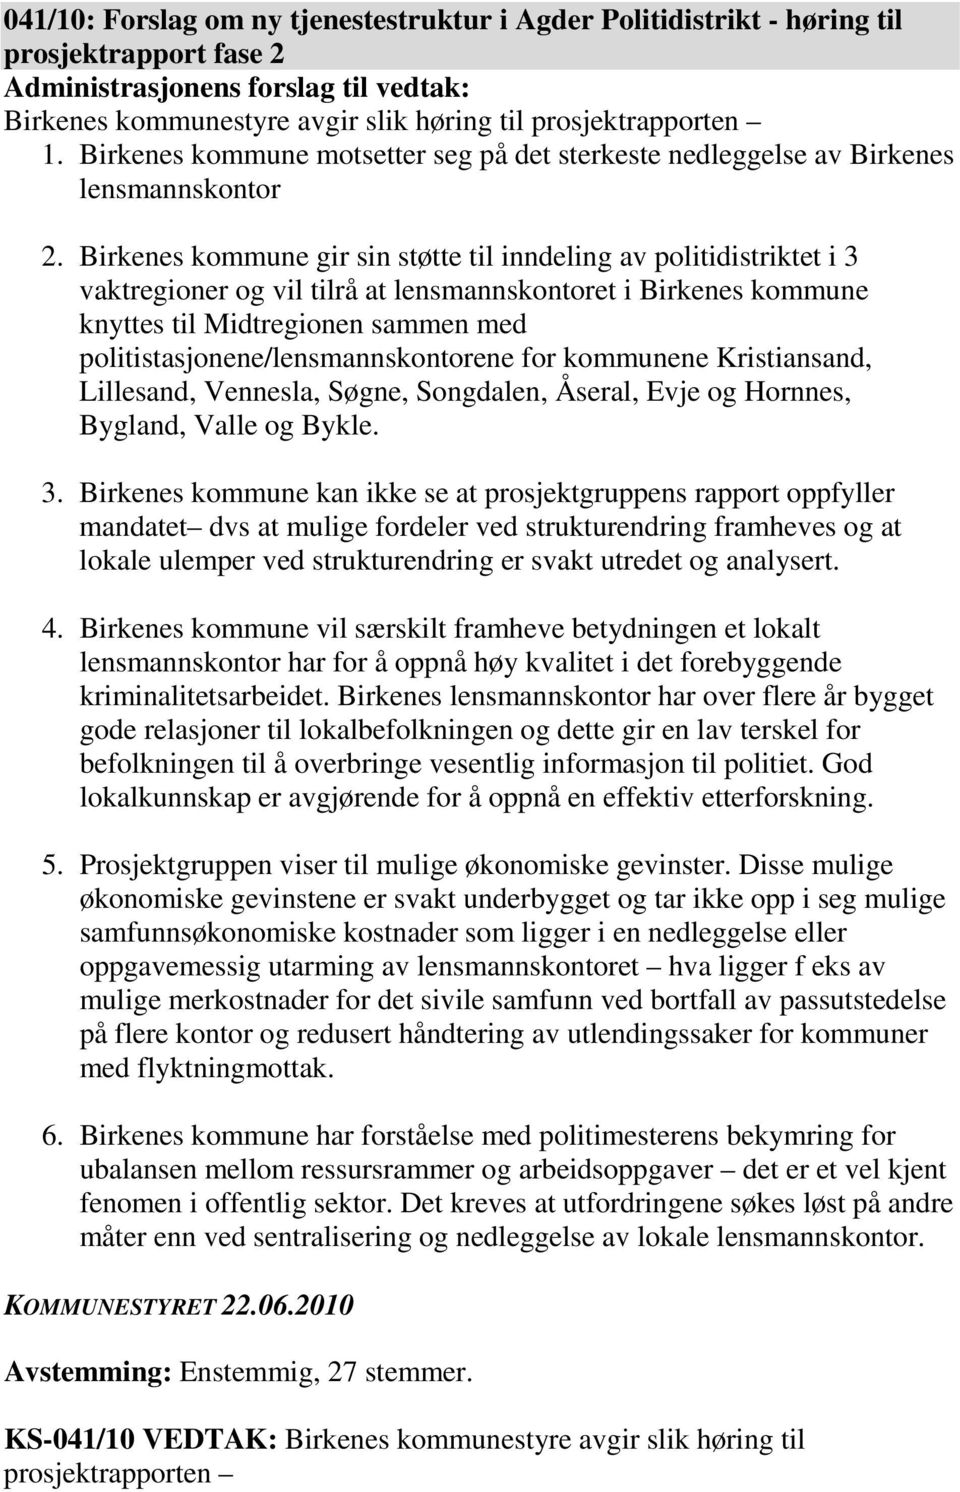 Birkenes kommune gir sin støtte til inndeling av politidistriktet i 3 vaktregioner og vil tilrå at lensmannskontoret i Birkenes kommune knyttes til Midtregionen sammen med